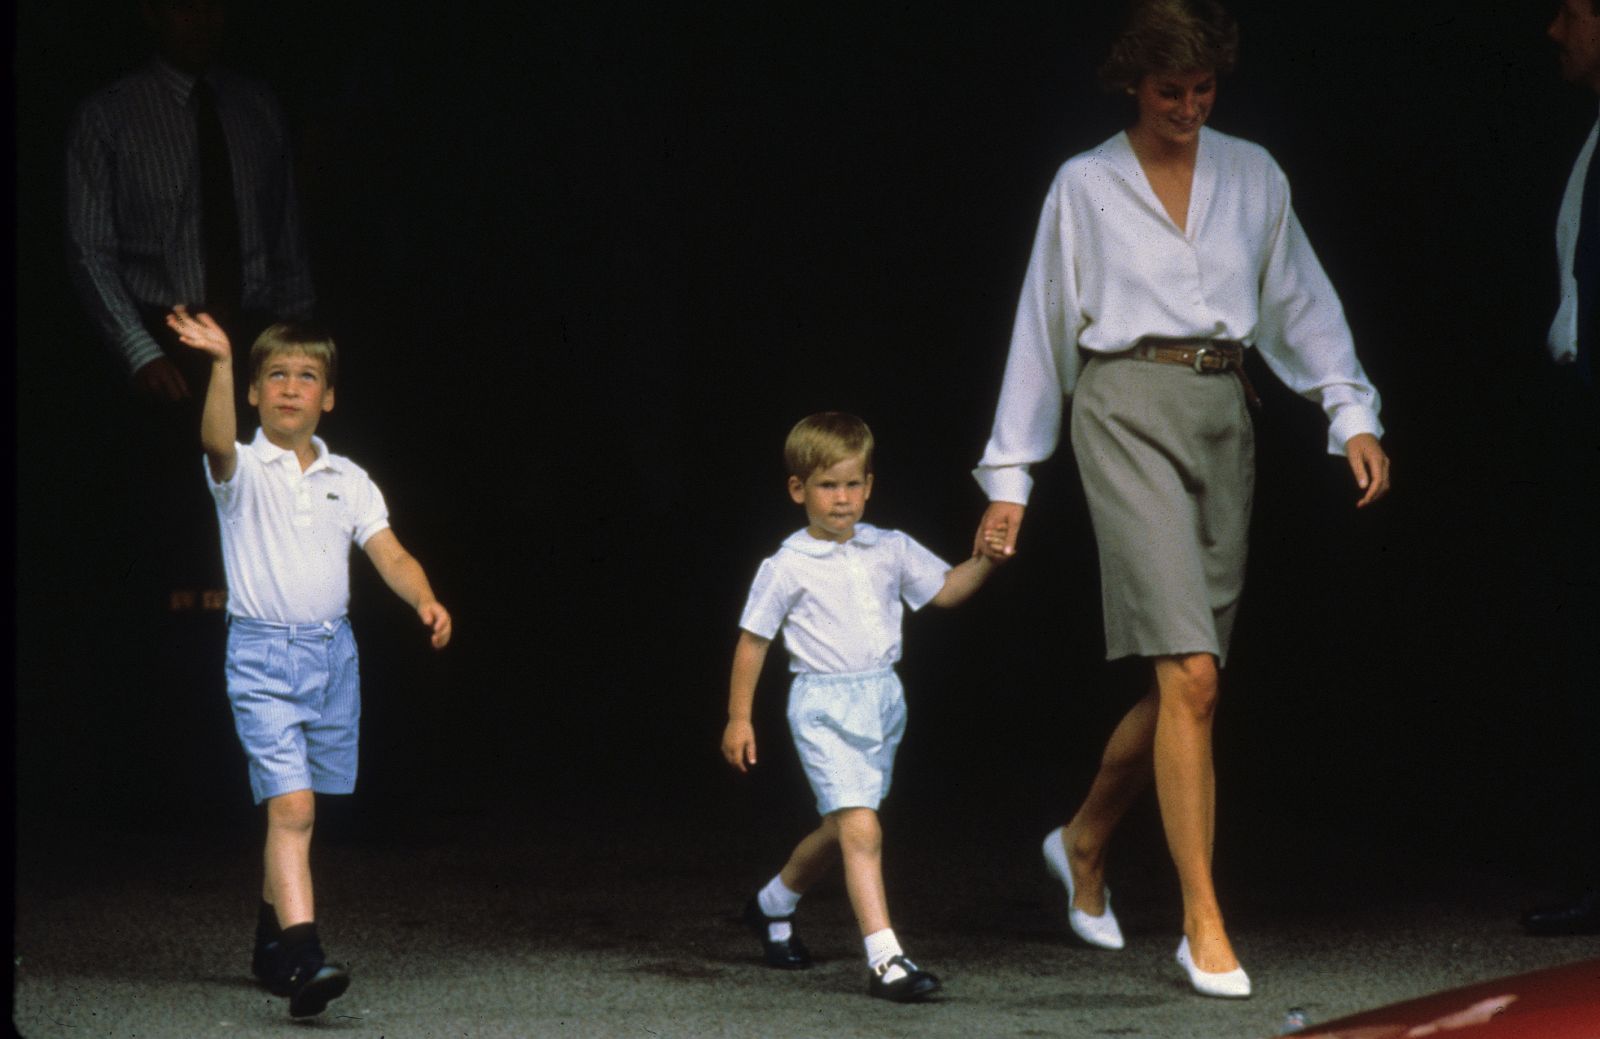 Diana de Gales - La princesa Diana junto a sus hijos, Guillermo y Enrique